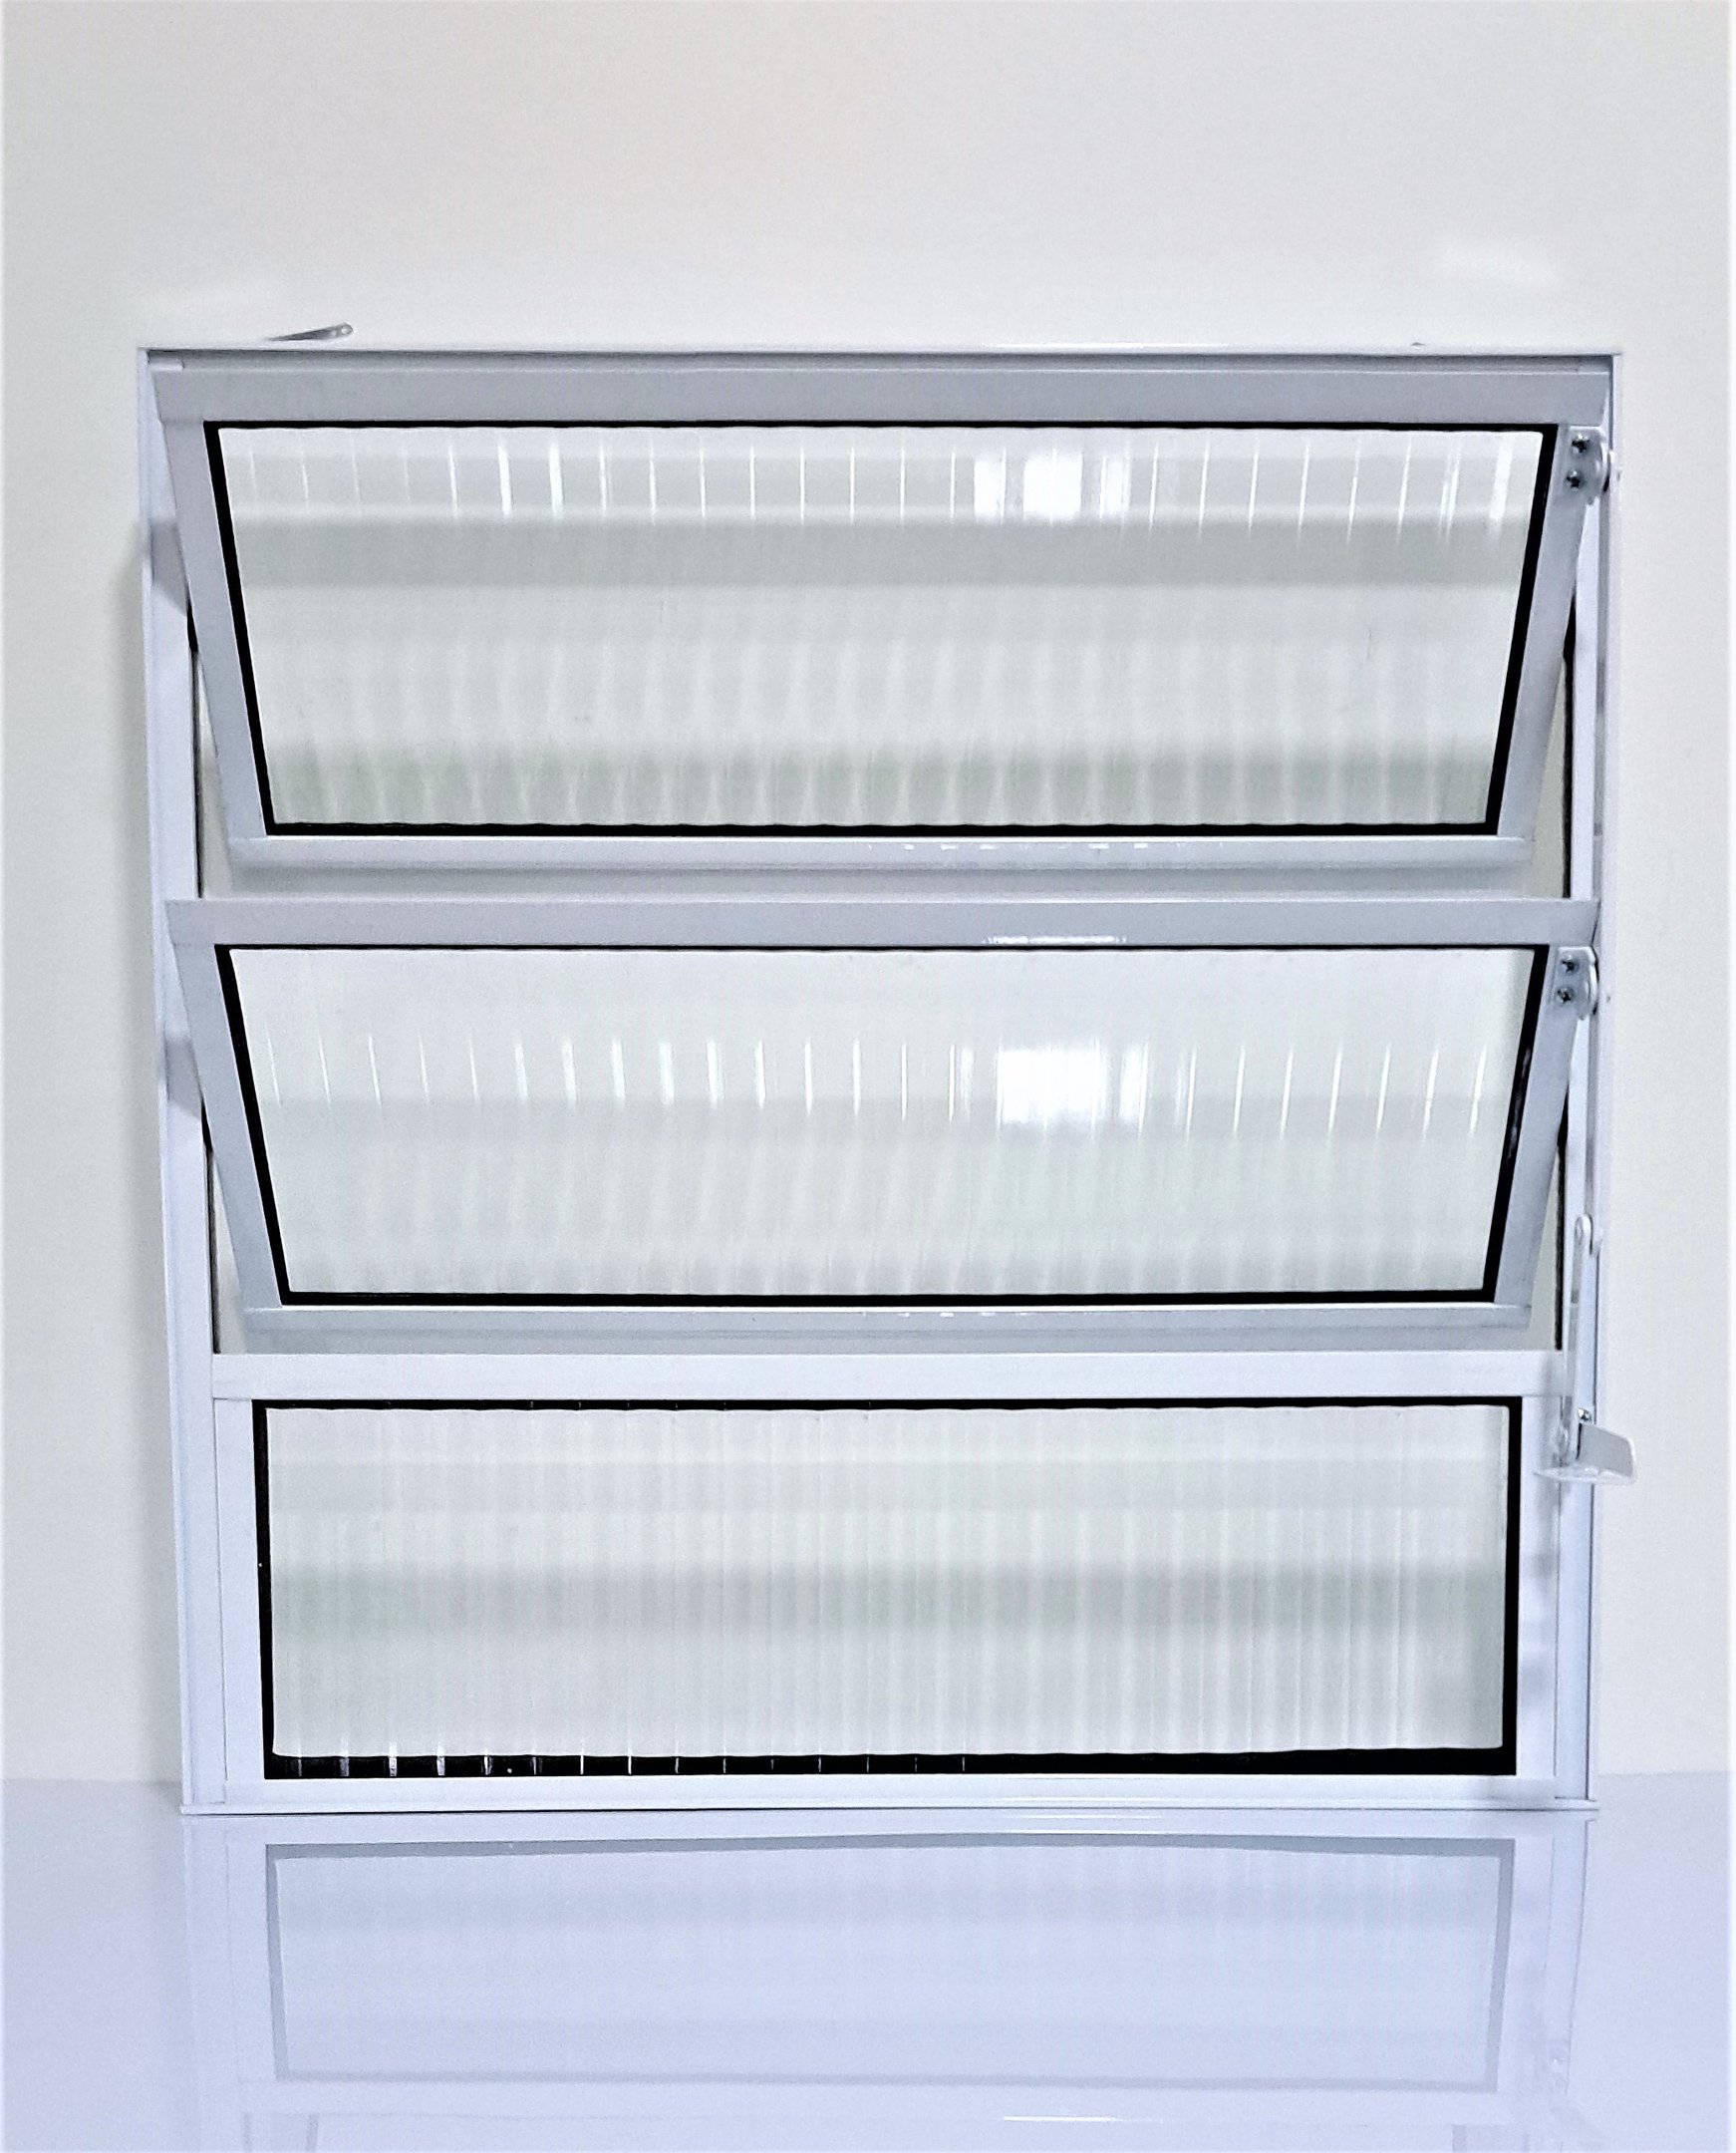 Vitrô Basculante de Alumínio com Vidro Canelado 1 Seção 60x60cm Branco - 3